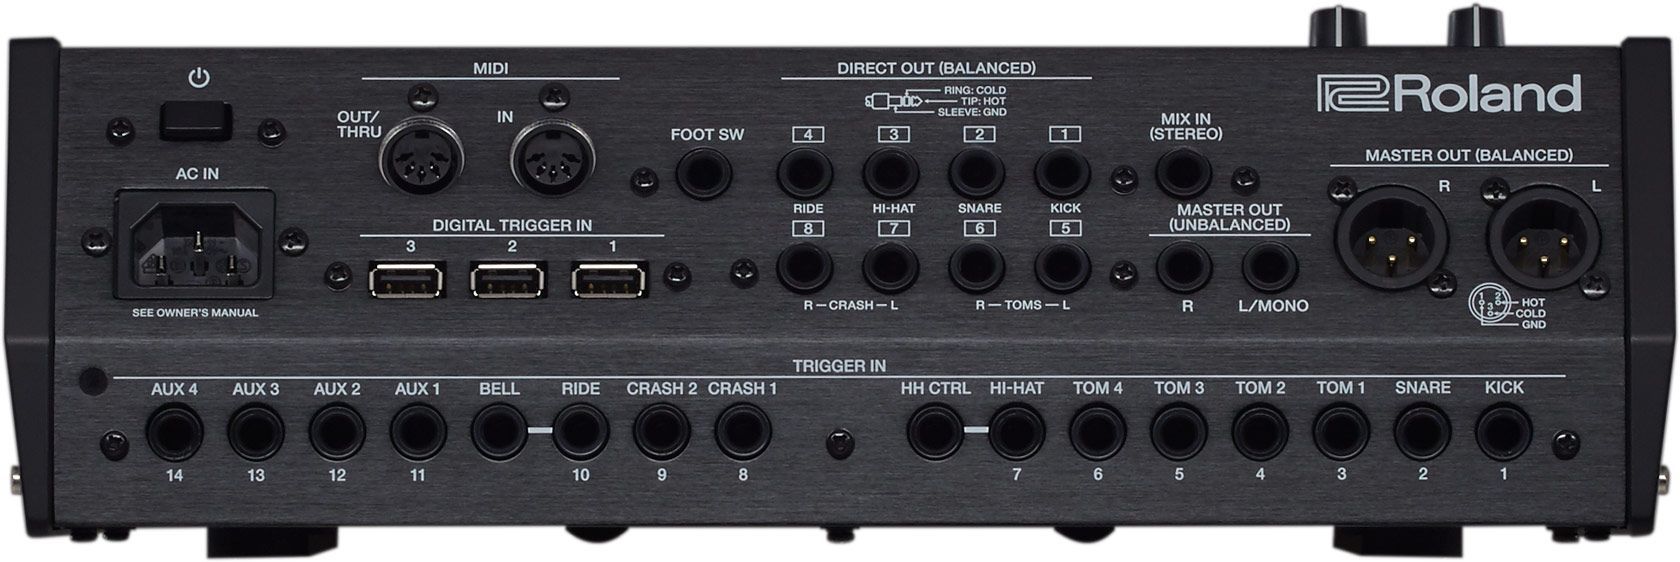 Roland TD-50X Drum Module